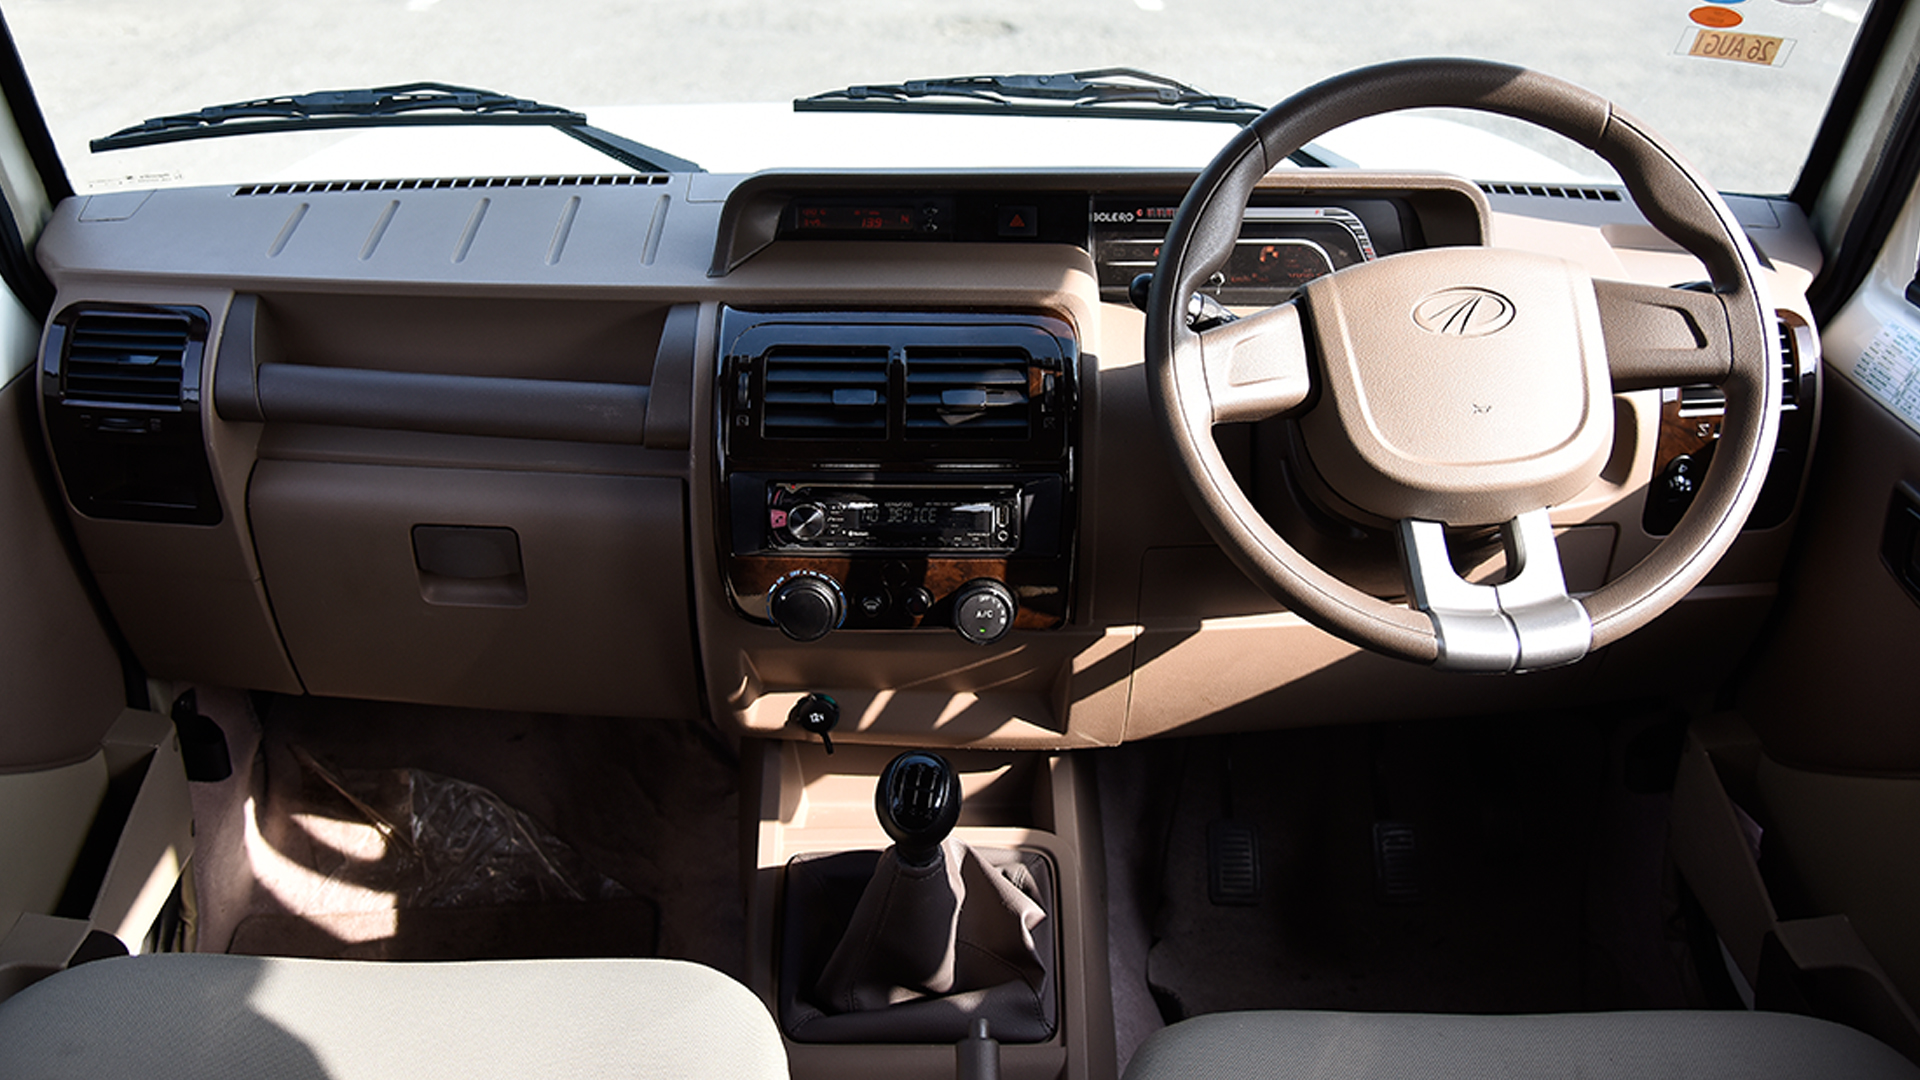 Mahindra Bolero 2016 Power Sle Interior Car Photos Overdrive